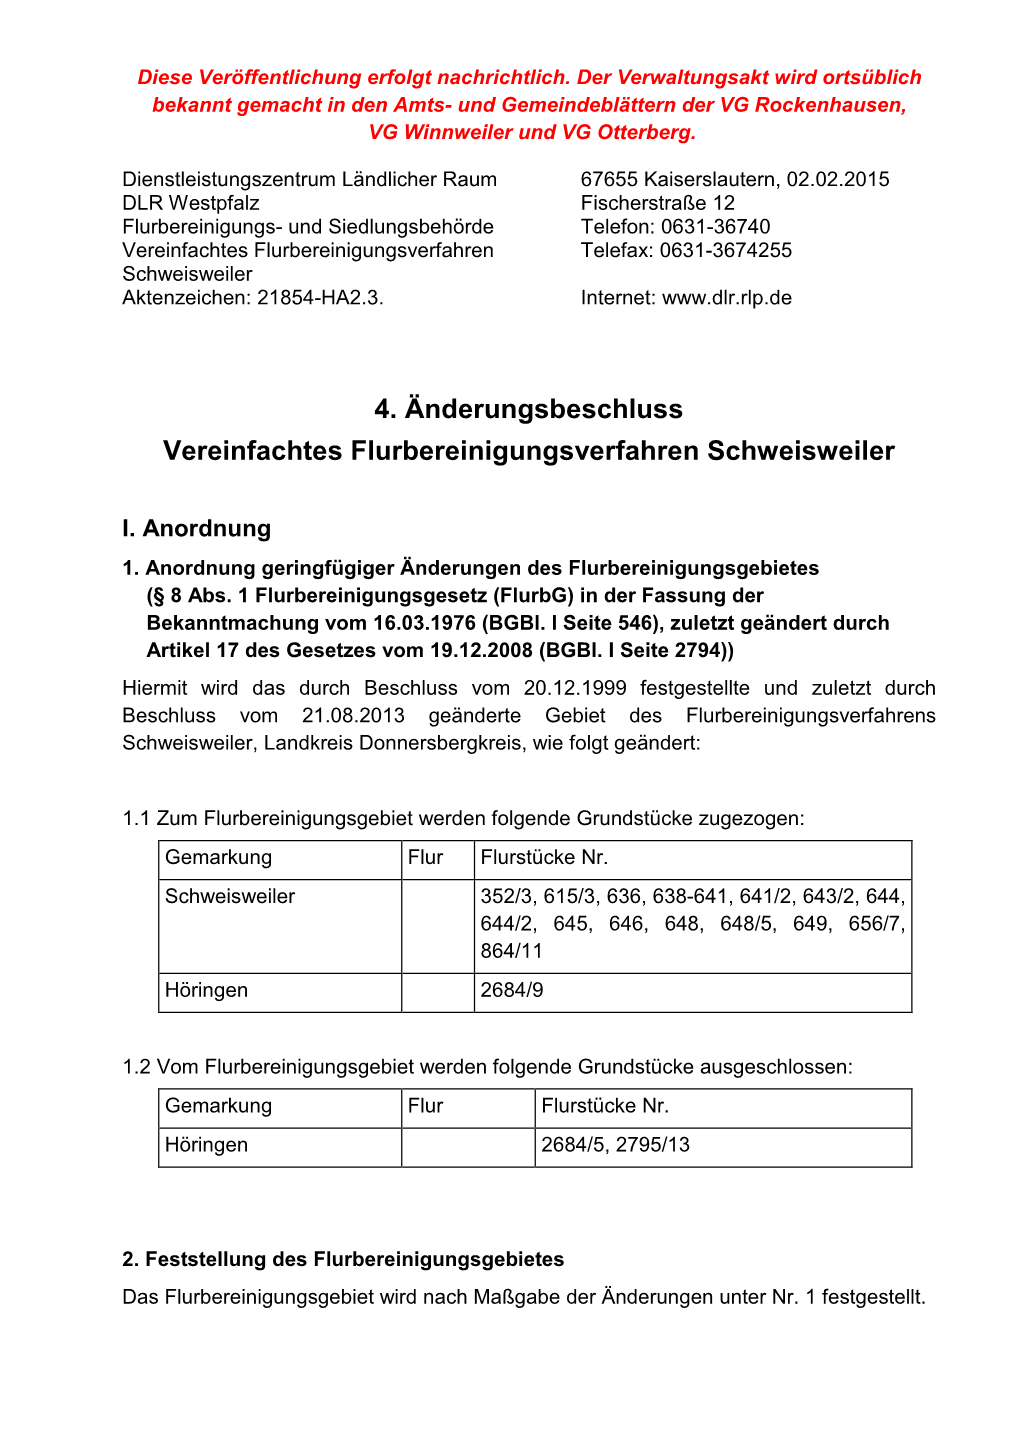 4. Änderungsbeschluss Vereinfachtes Flurbereinigungsverfahren Schweisweiler